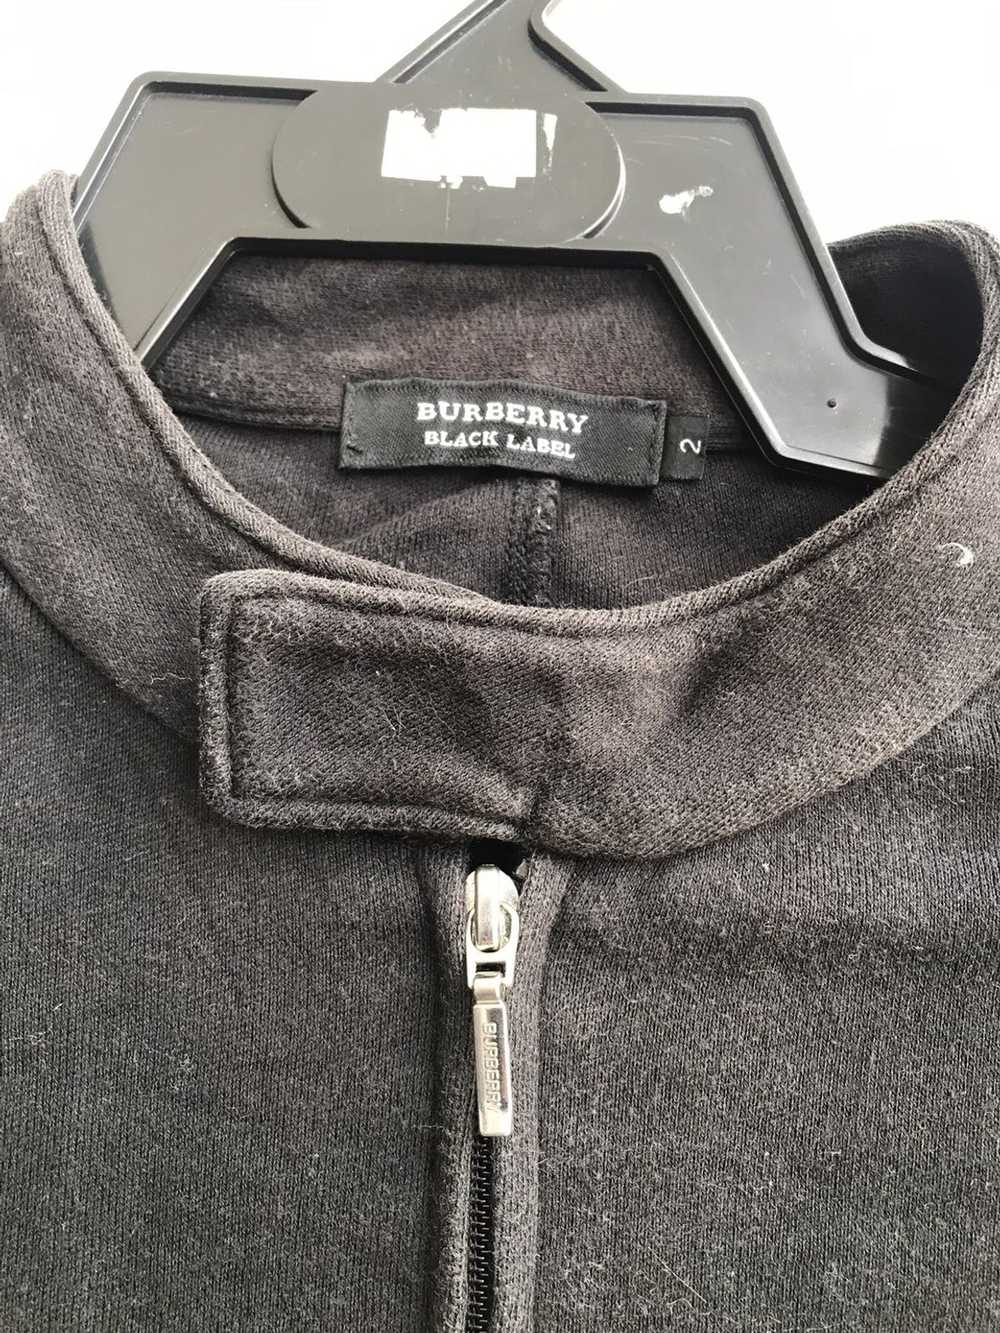 Burberry × Designer Burberry Black Label Jacket S… - image 4